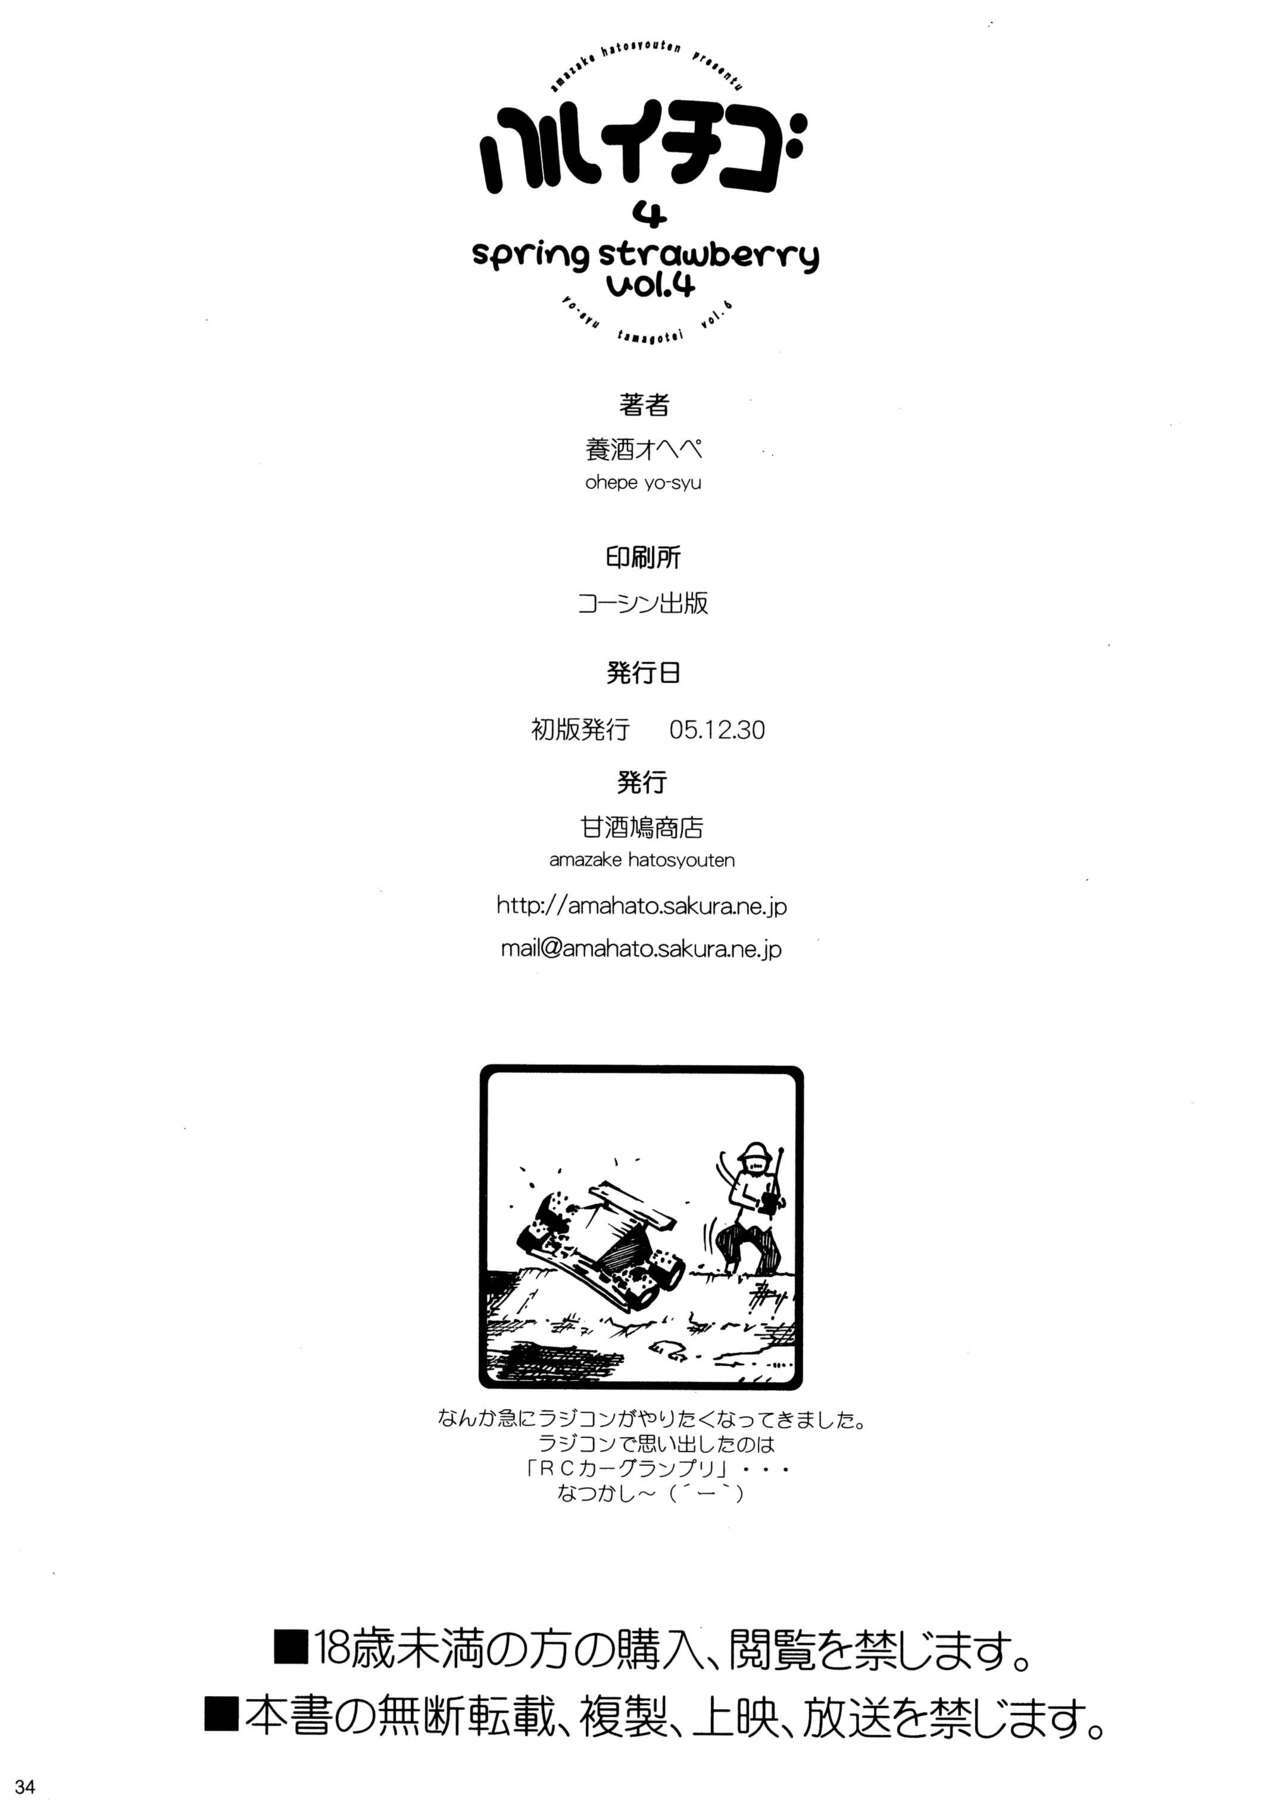 [Amazake Hatosyo-ten (Yoshu Ohepe)] Haru Ichigo Vol. 4 - Spring Strawberry Vol. 4 (Ichigo 100%) [Digital] page 34 full